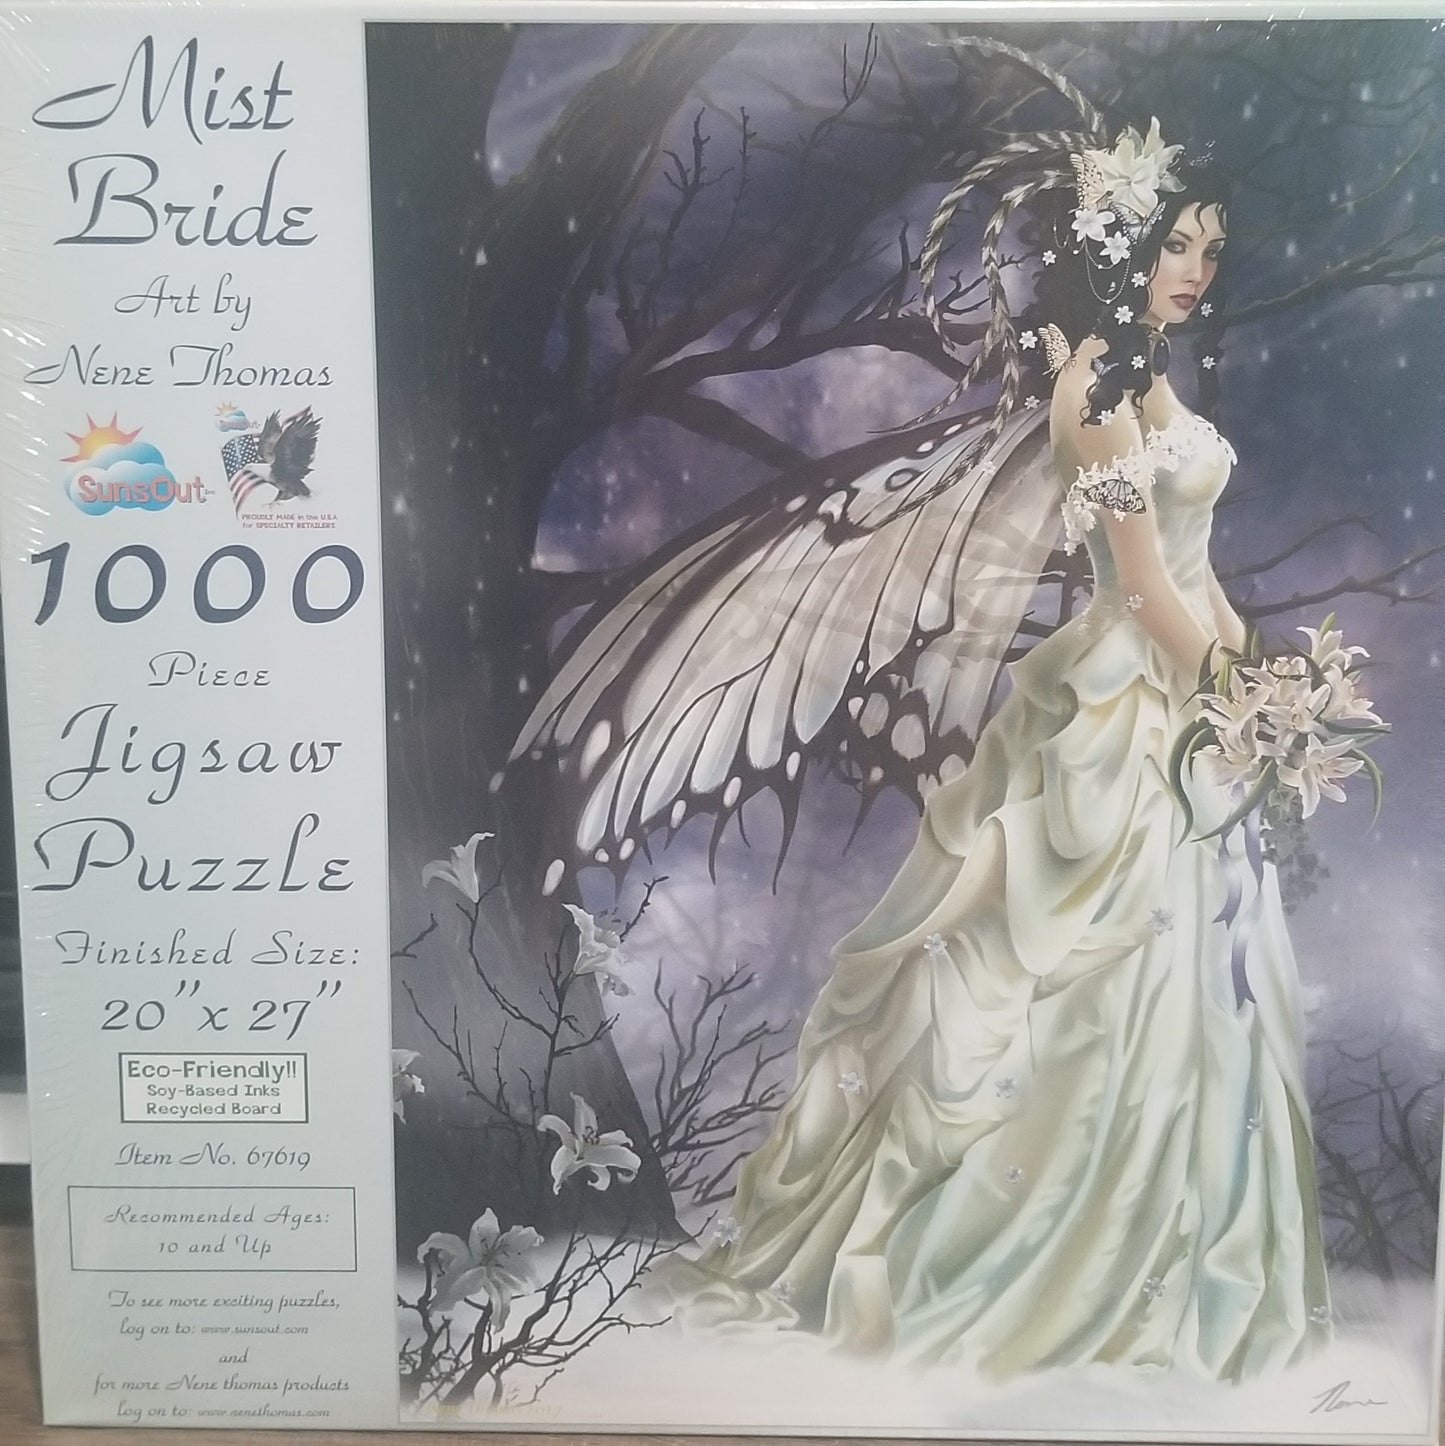 Mist Bride by Nene Thomas, 1000 Piece Puzzle